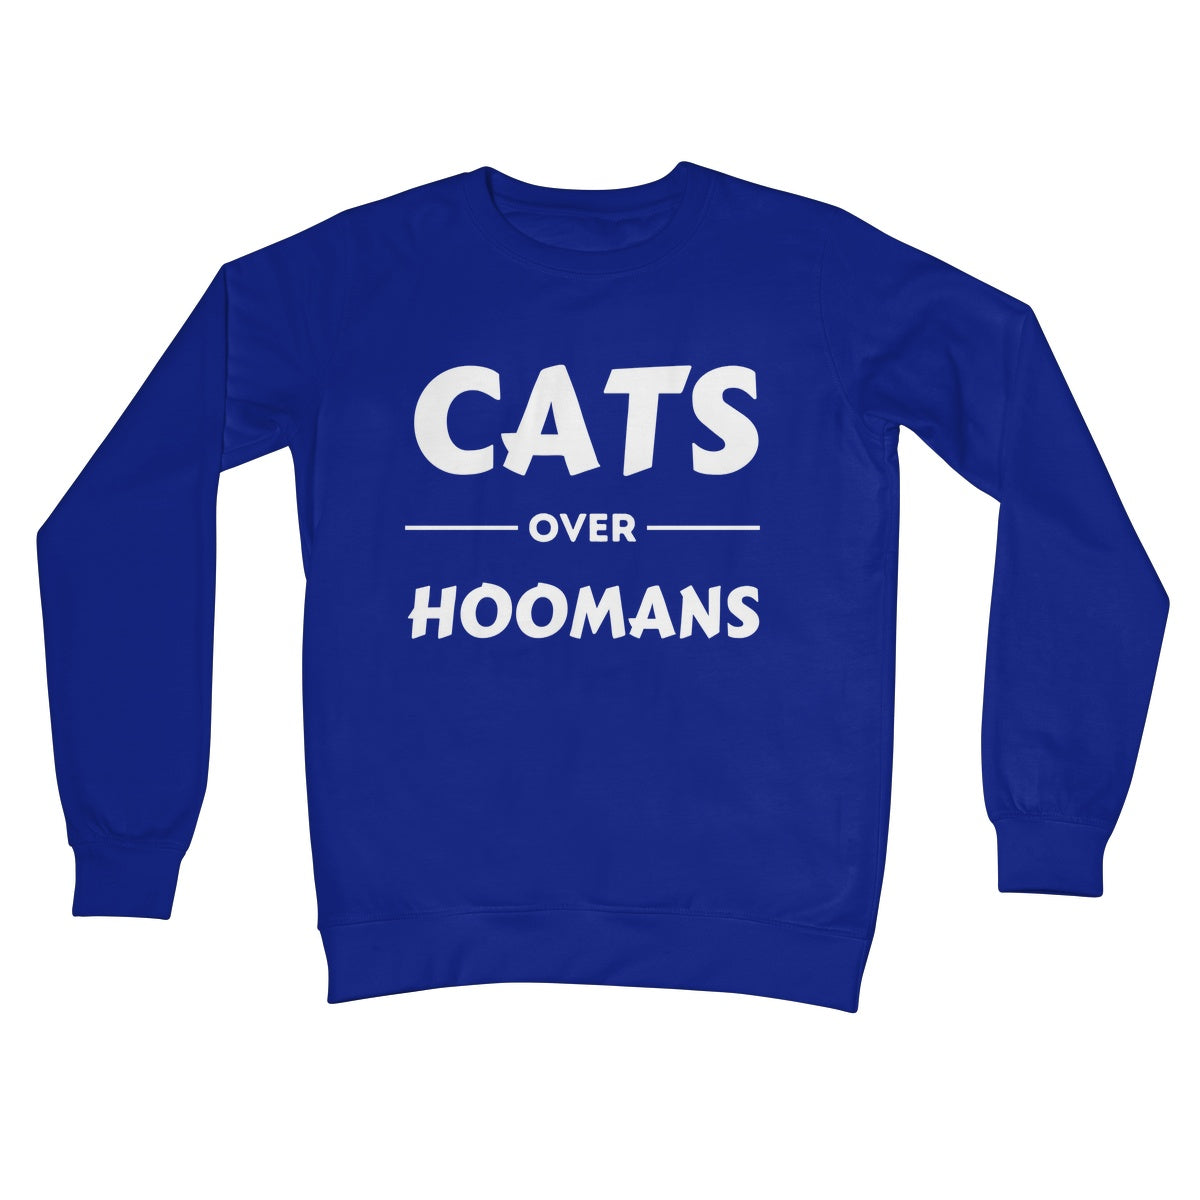 cats over hoomans jumper blue